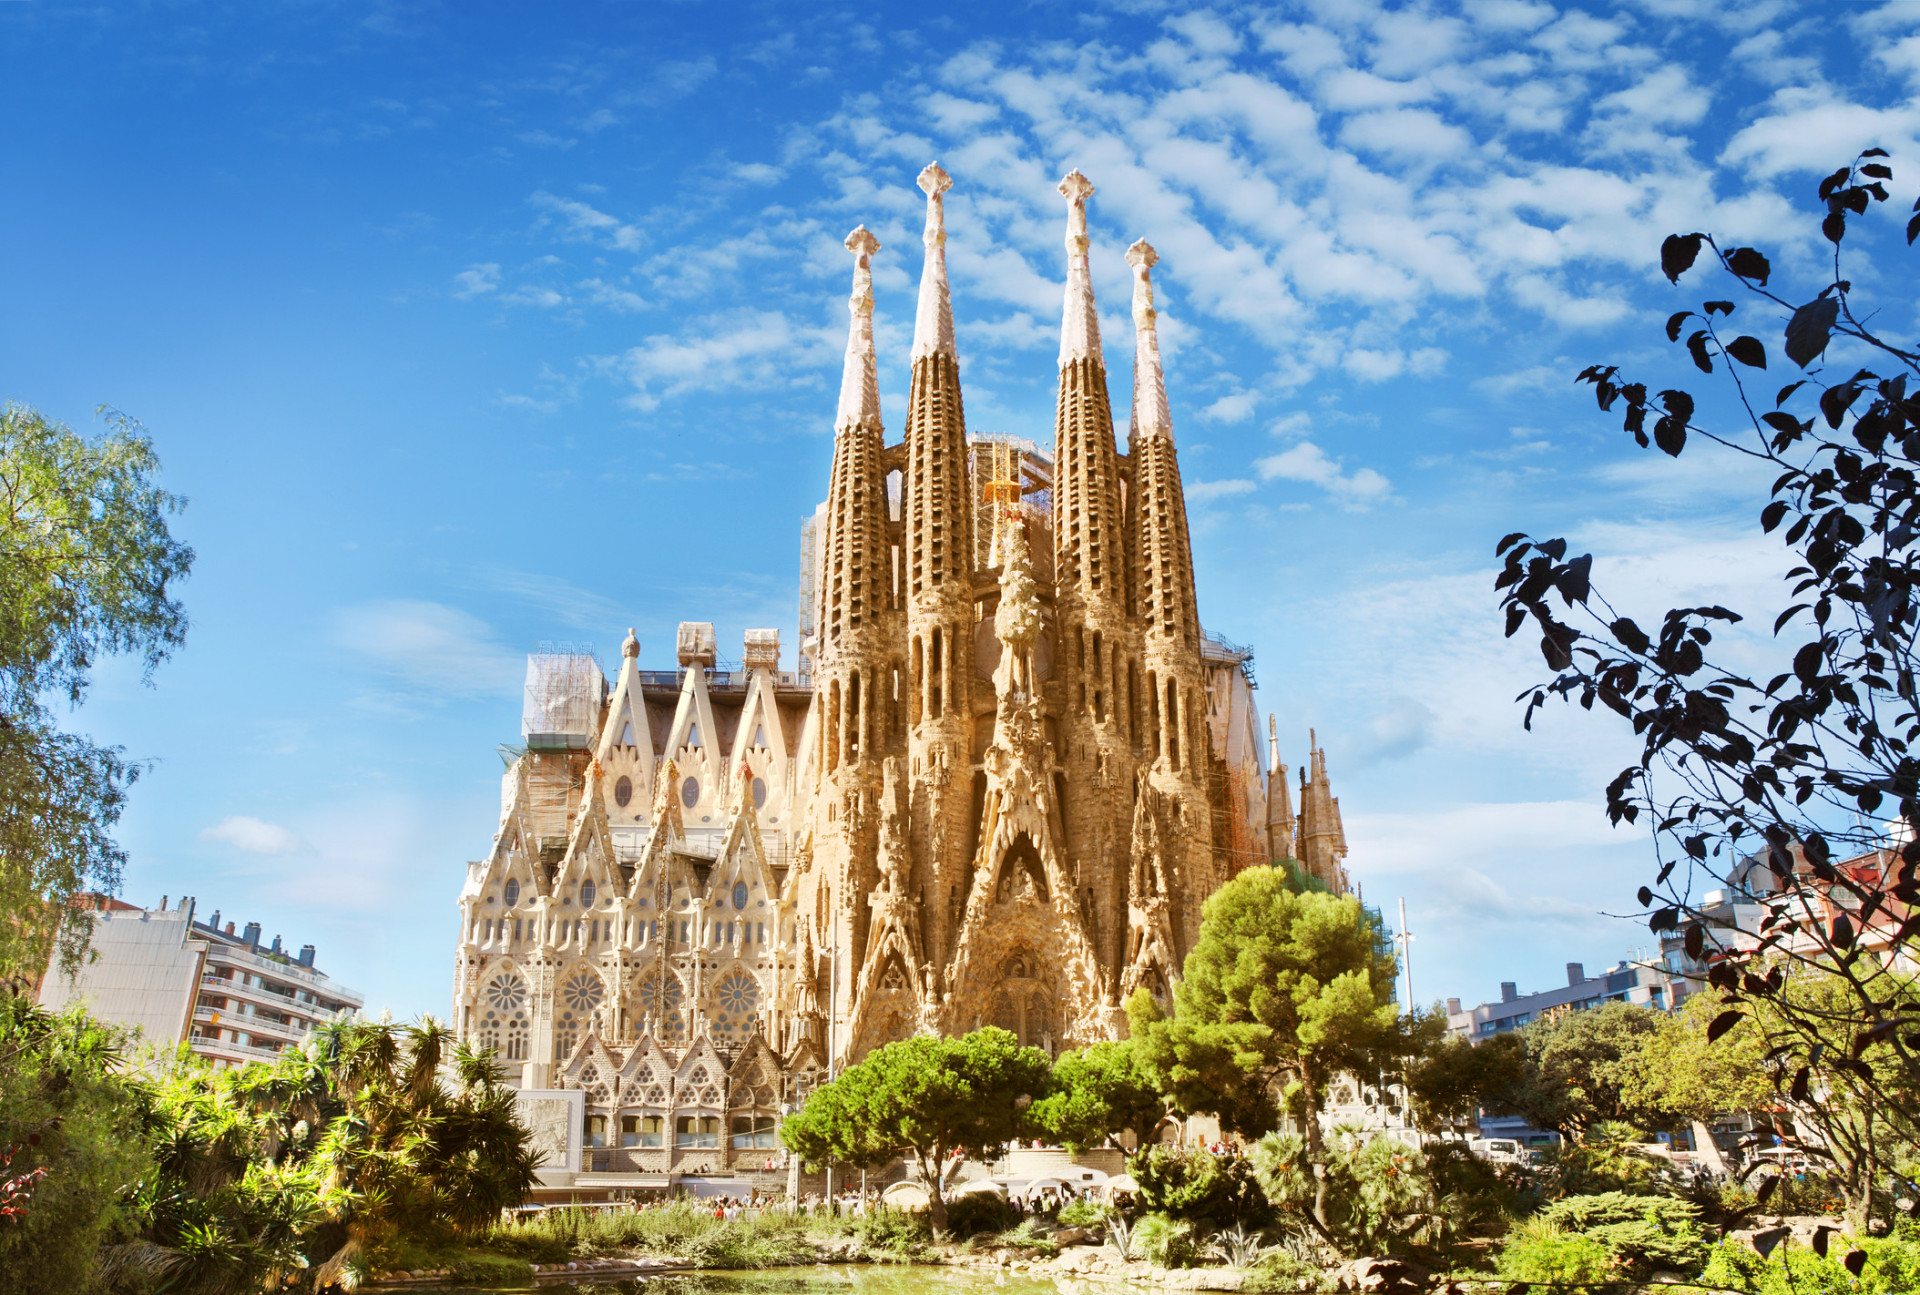 Il y a des incontournables à Barcelone même si on y vient que 2-3 jours. Le premier c'est au moins de passer devant la Sagrada Família. <p><a href="https://www.msn.com/fr-fr/community/channel/vid-7xx8mnucu55yw63we9va2gwr7uihbxwc68fxqp25x6tg4ftibpra?cvid=94631541bc0f4f89bfd59158d696ad7e">Suivez-nous et accédez tous les jours à du contenu exclusif</a></p>